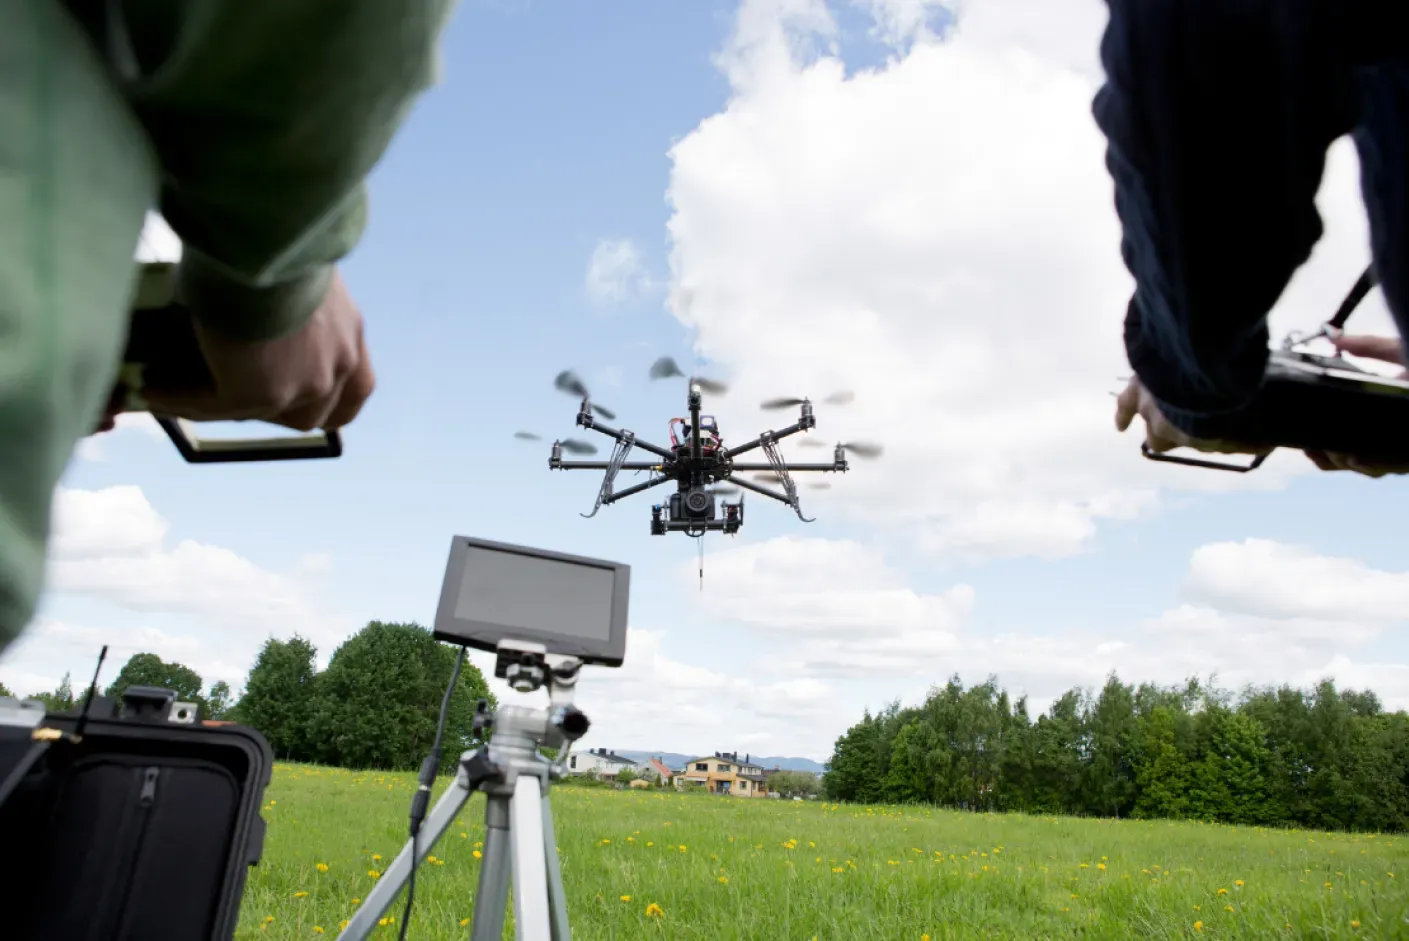 Drone equipado para operações BVLOS com Licença Drones Sts 02 BVLOS em campo agrícola